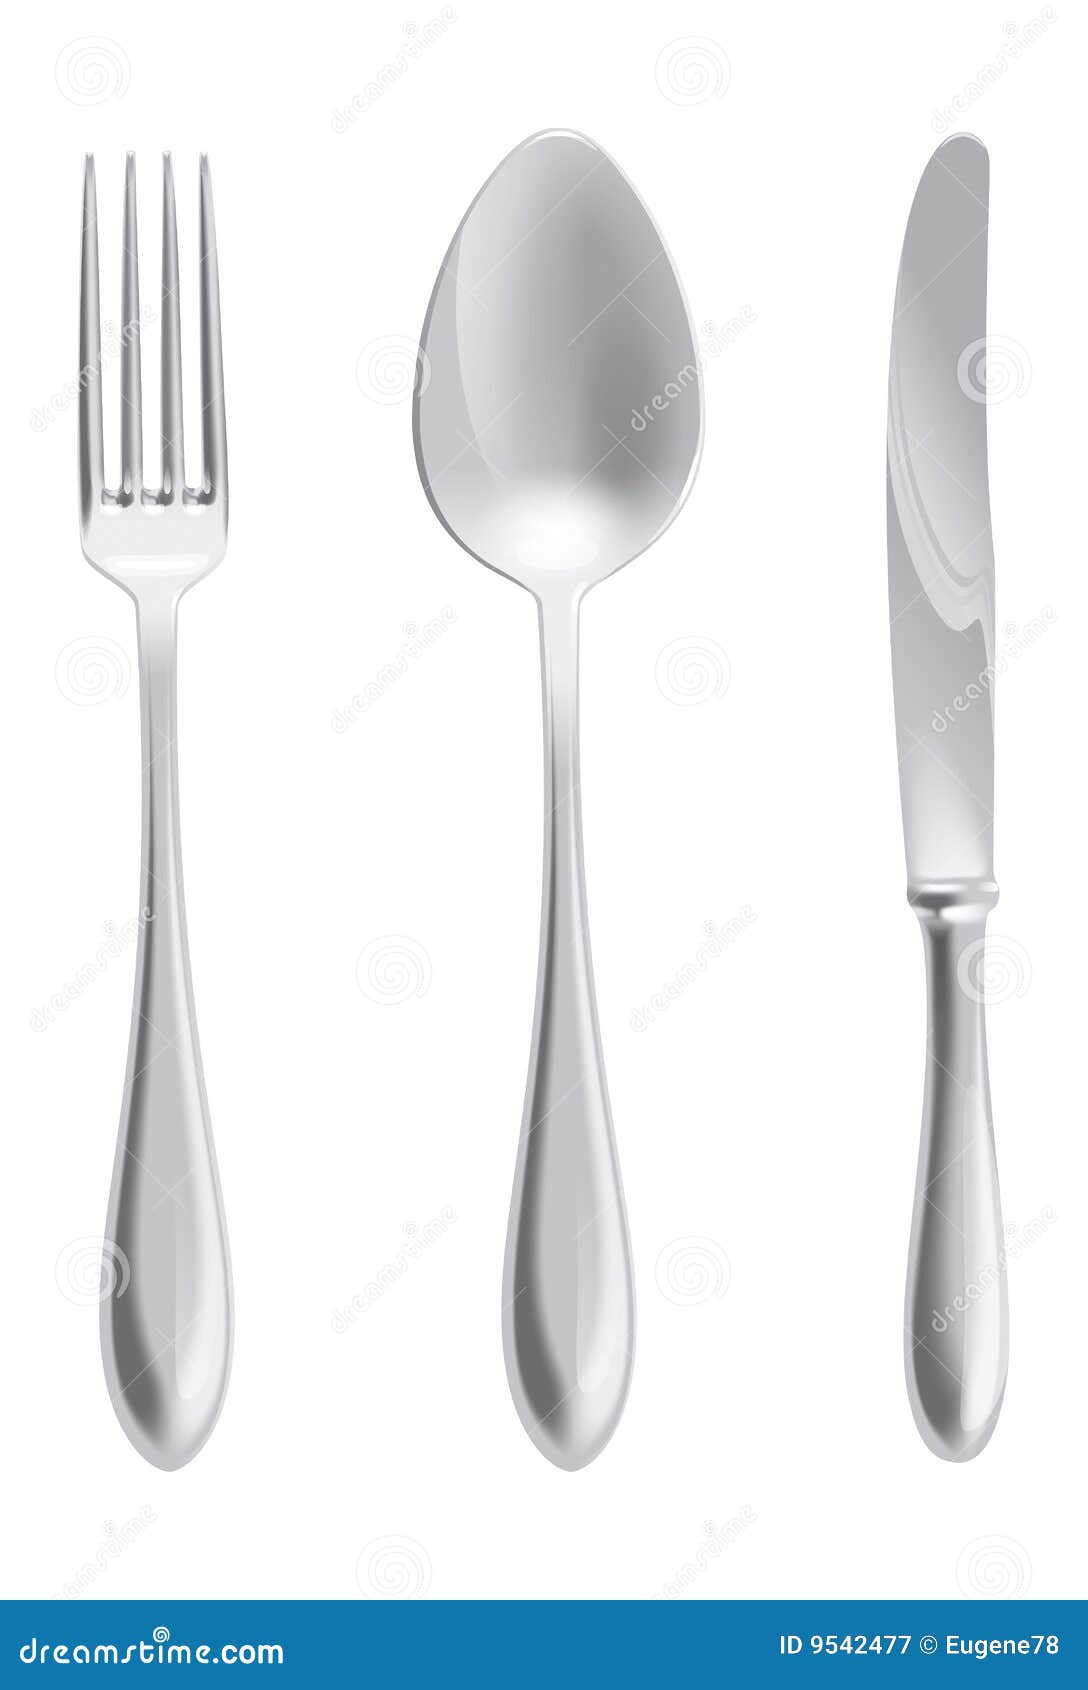 Tischbesteck. Ein Messer, ein Löffel und eine Gabel auf weißem Hintergrund. Vektorursprüngliches Bild betriebsbereit zum Download.